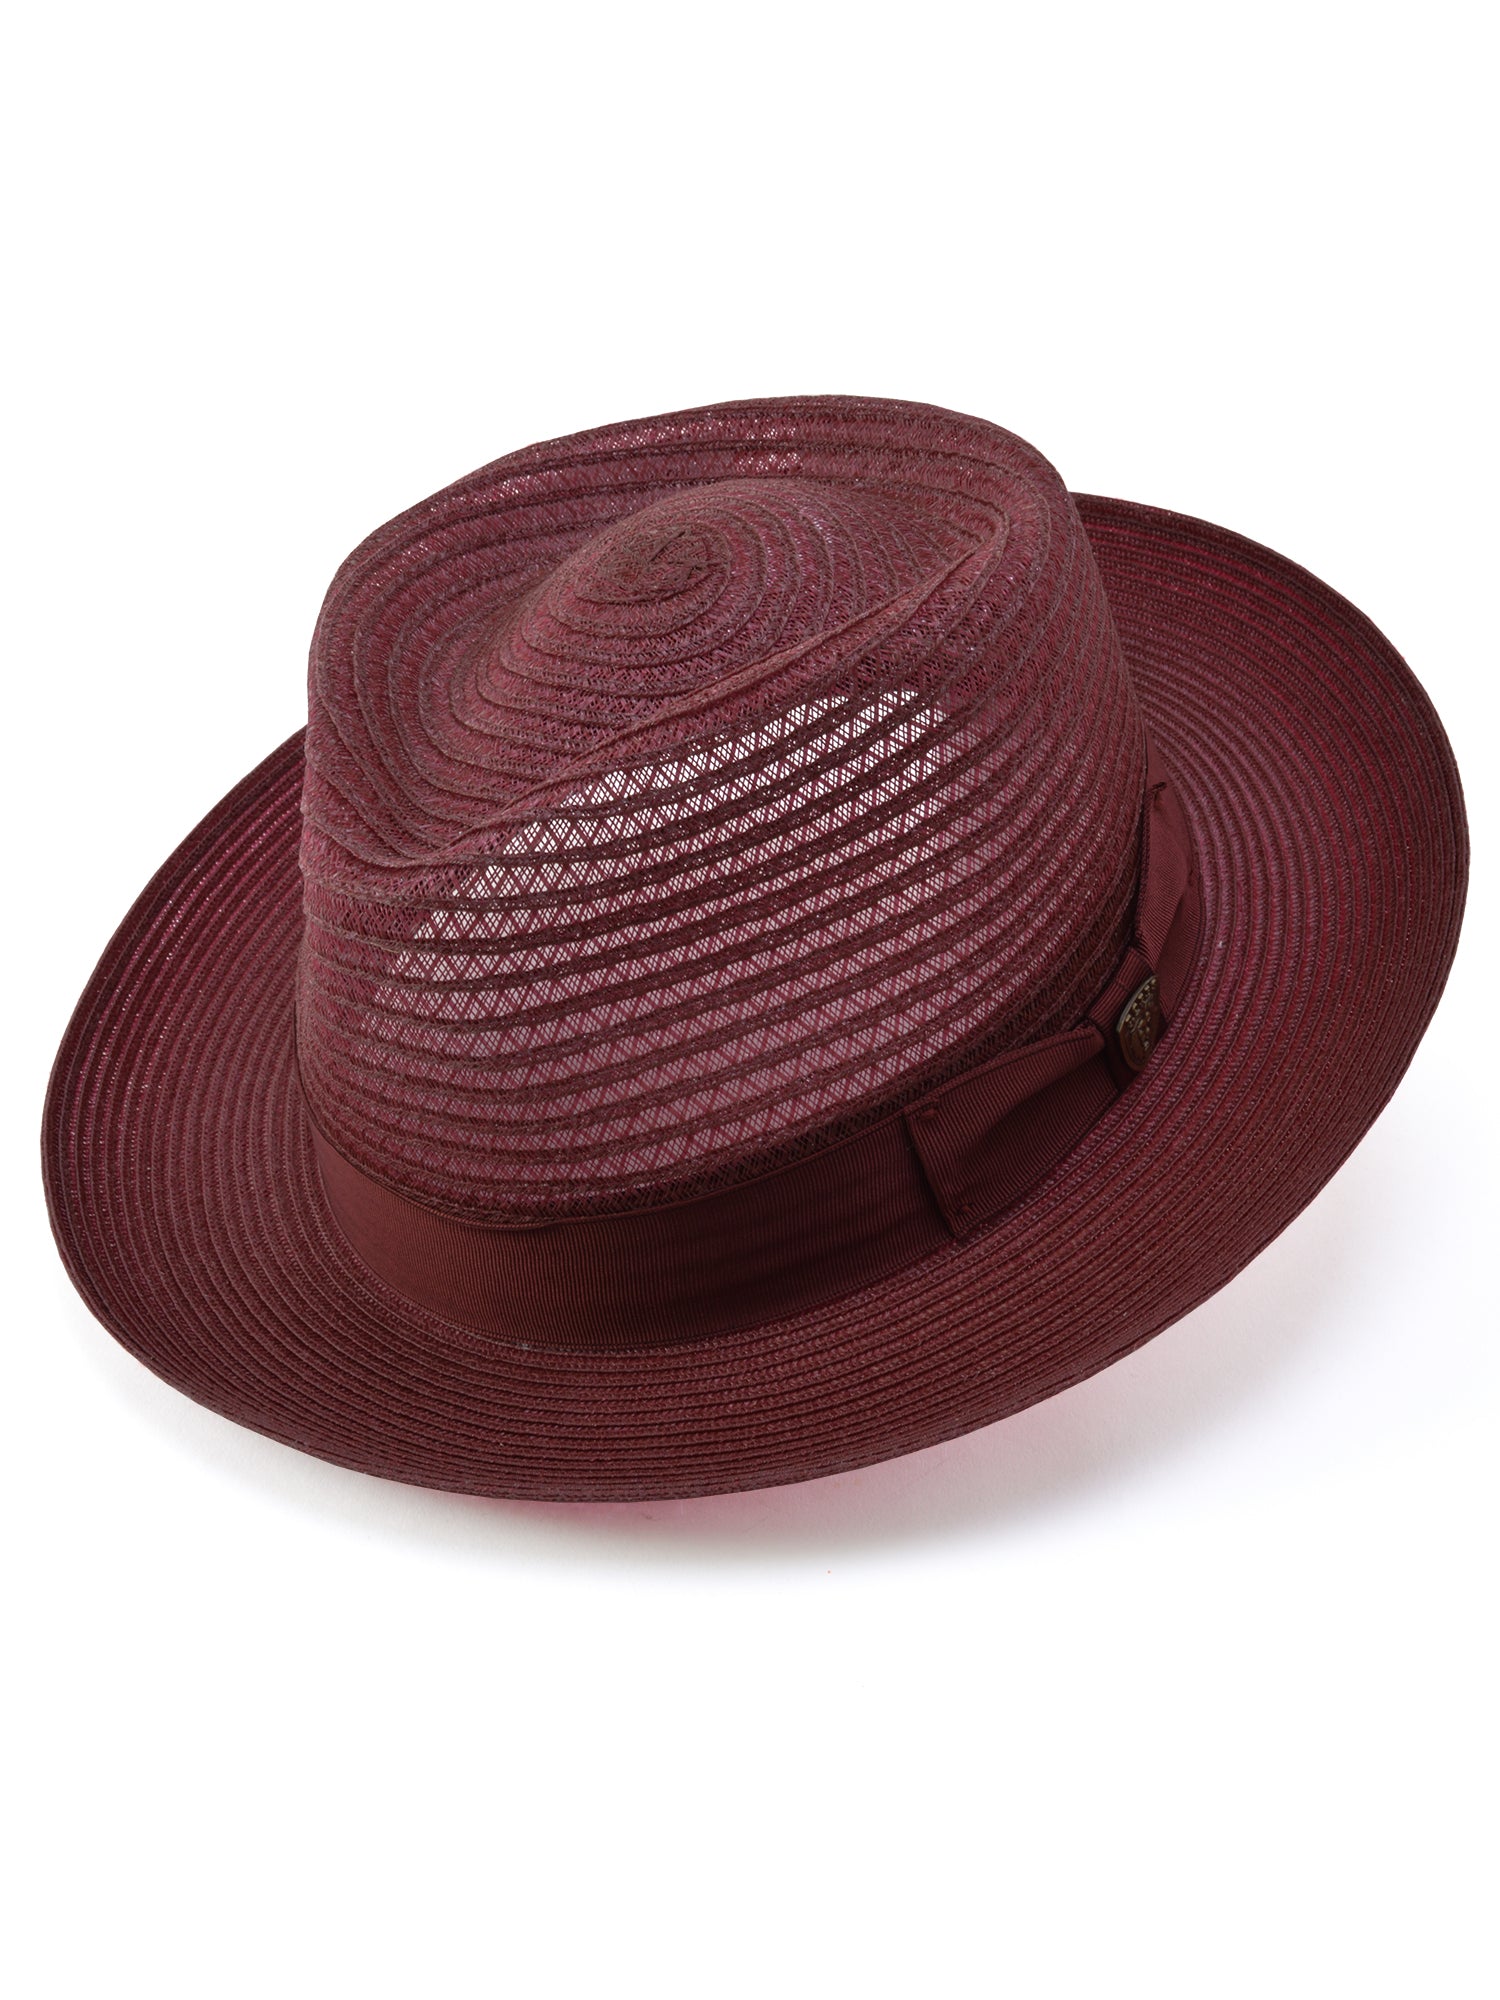 Dobbs Golden Coast Vented Milan Straw Hat in Burgundy